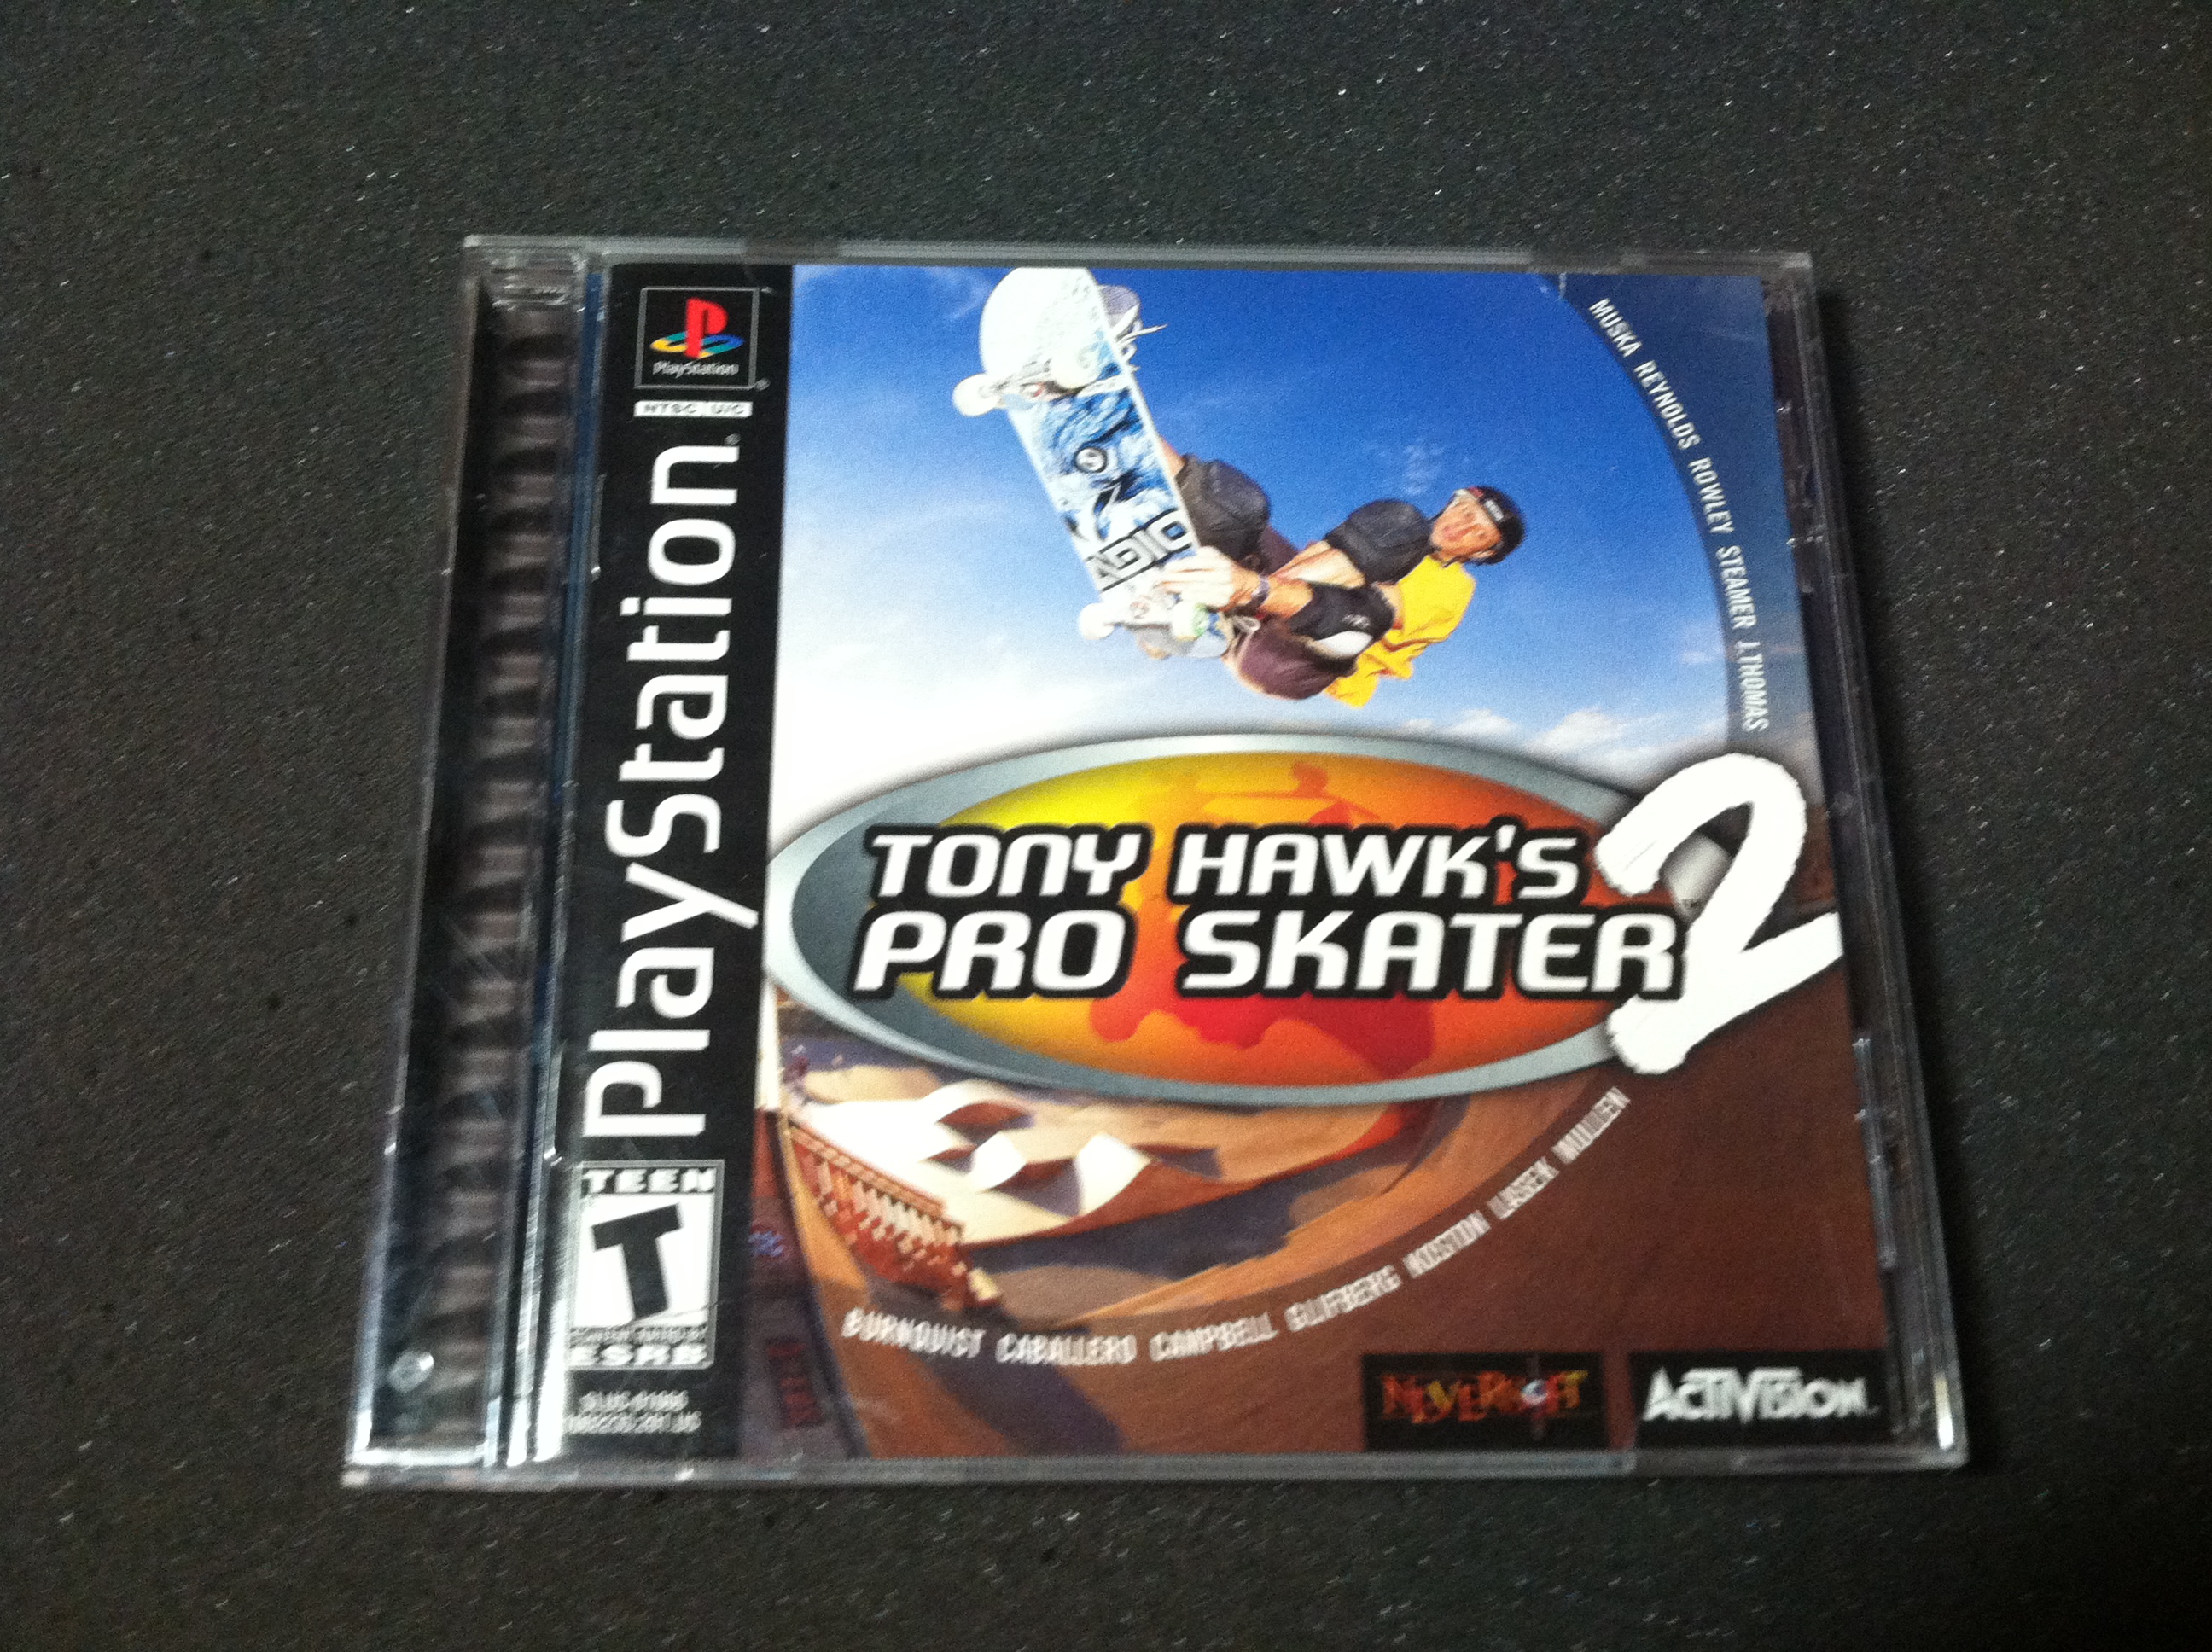 Tony Hawks Pro Skater 2 PS1 front